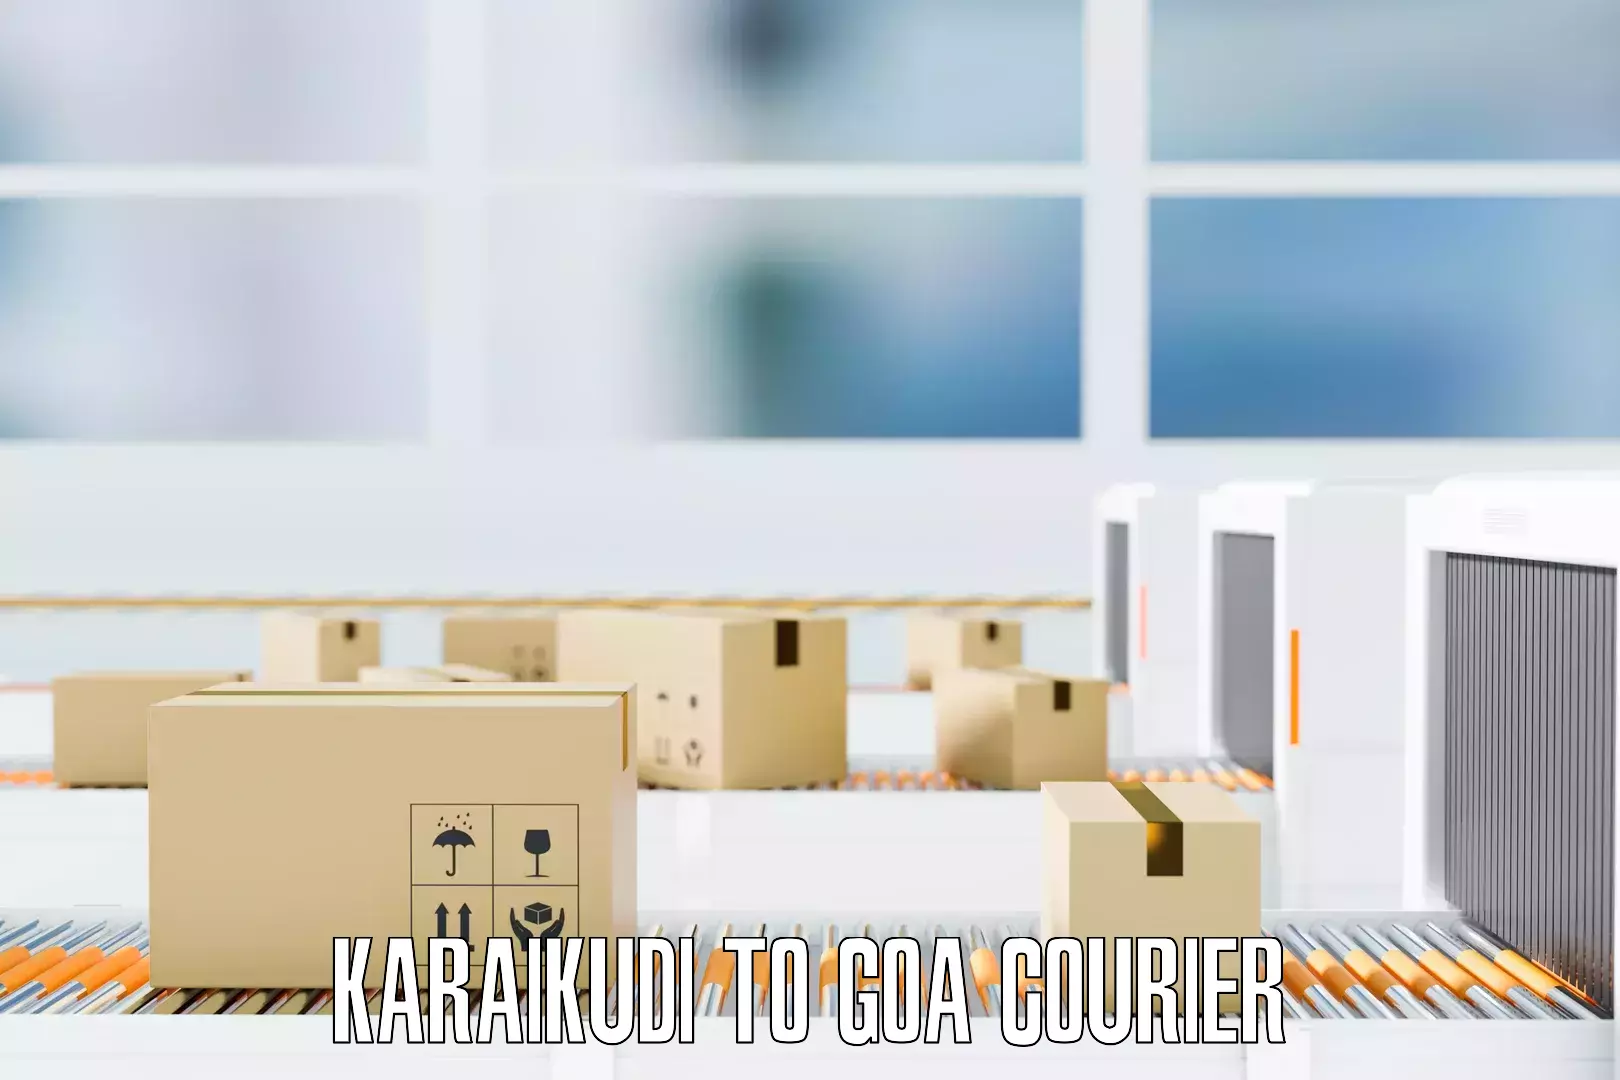 Professional packing services in Karaikudi to NIT Goa